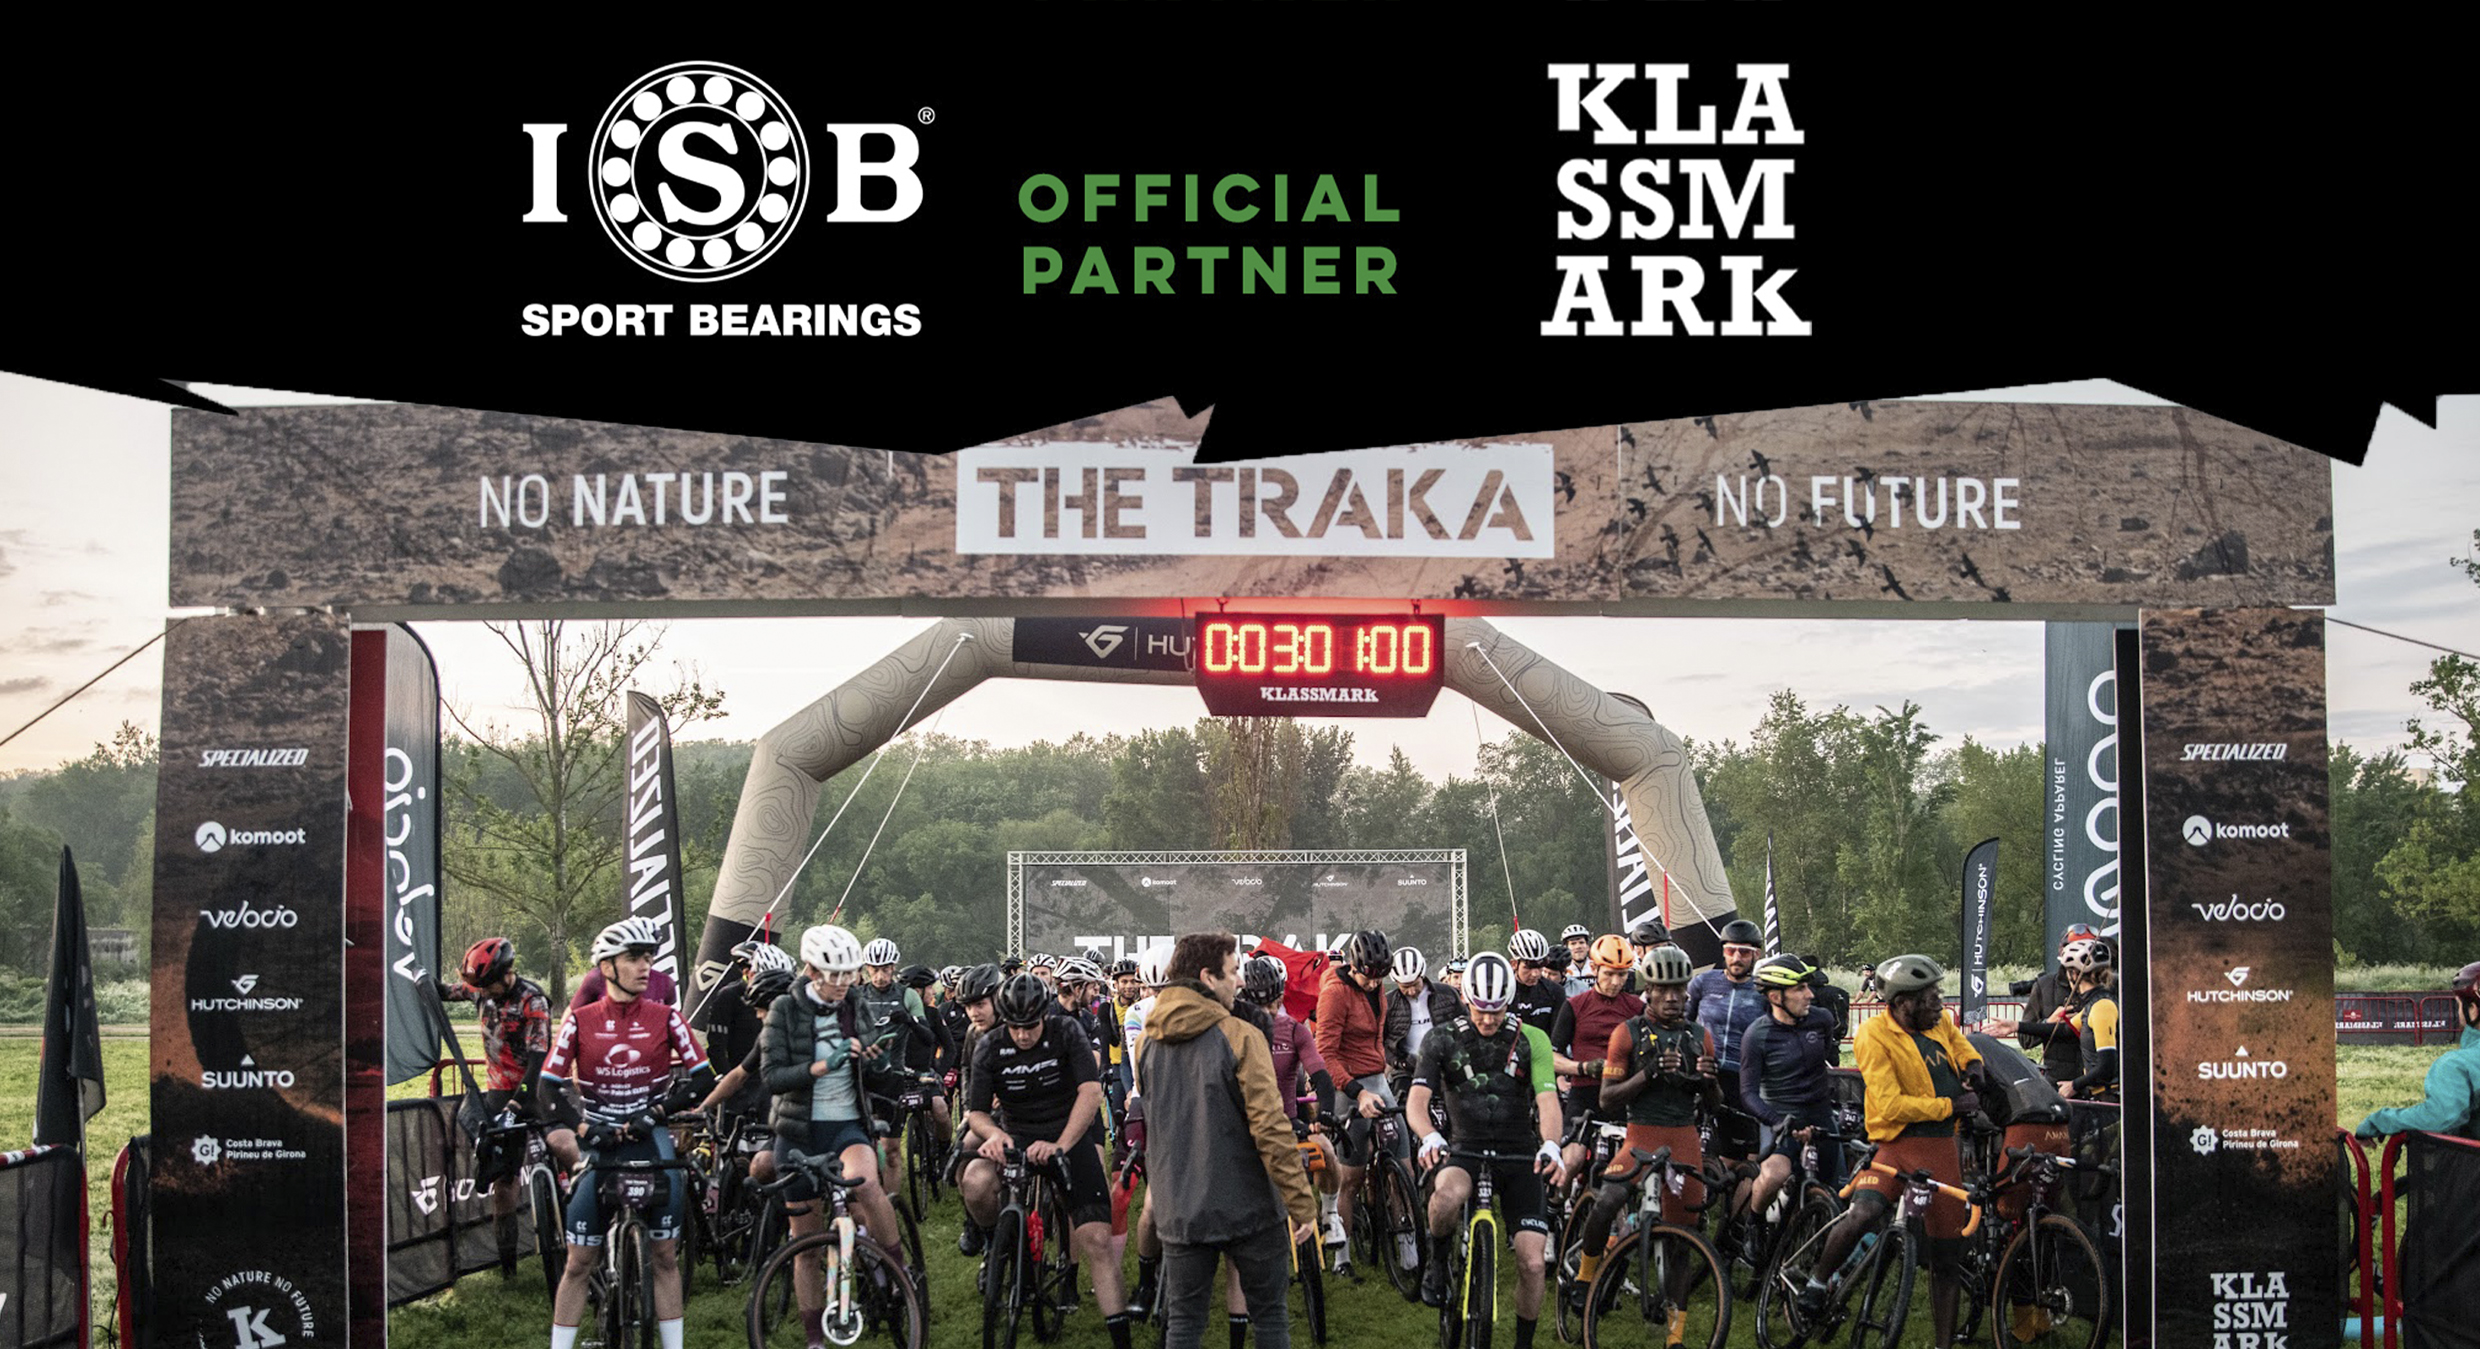 ISB Sport patrocinador Klassmark